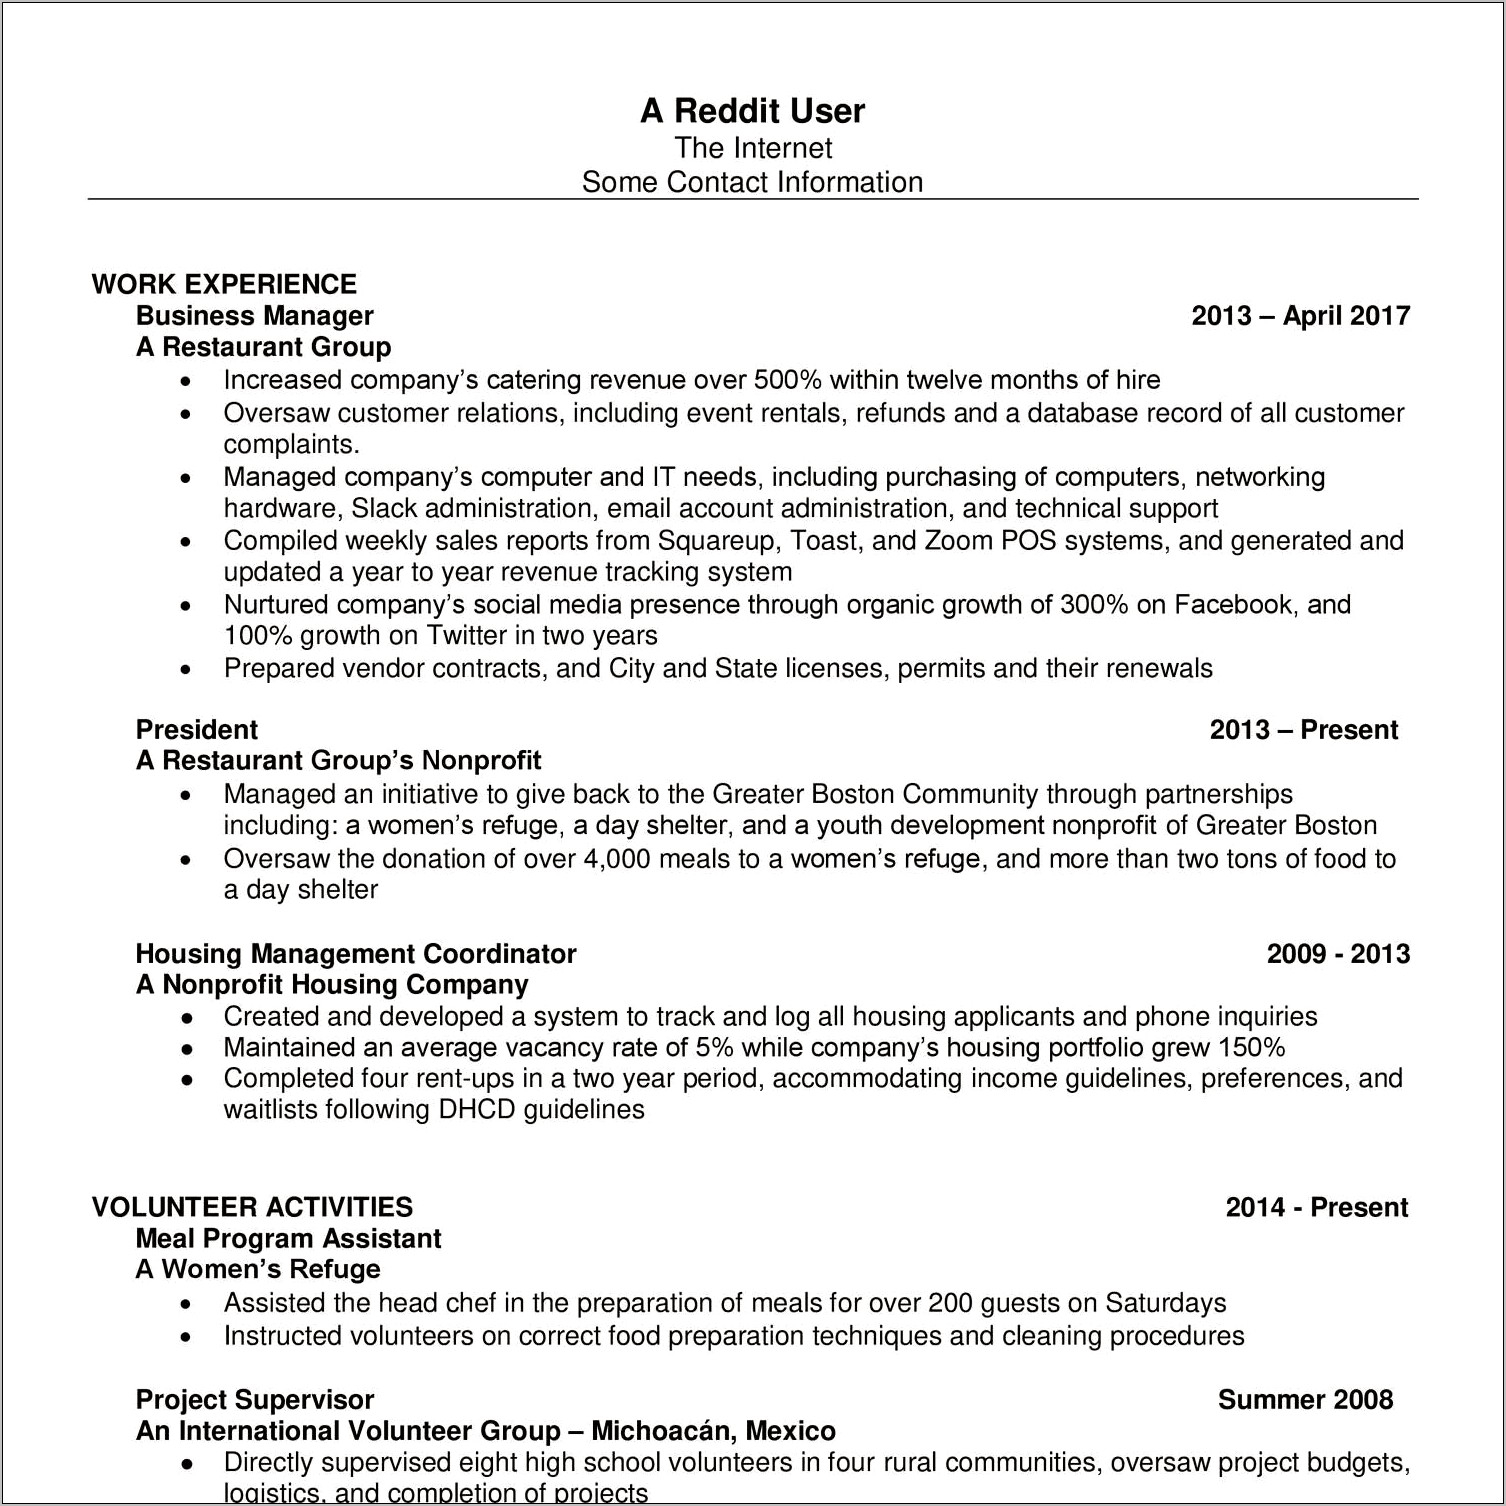 Resume In Pdf Or Word Reddit